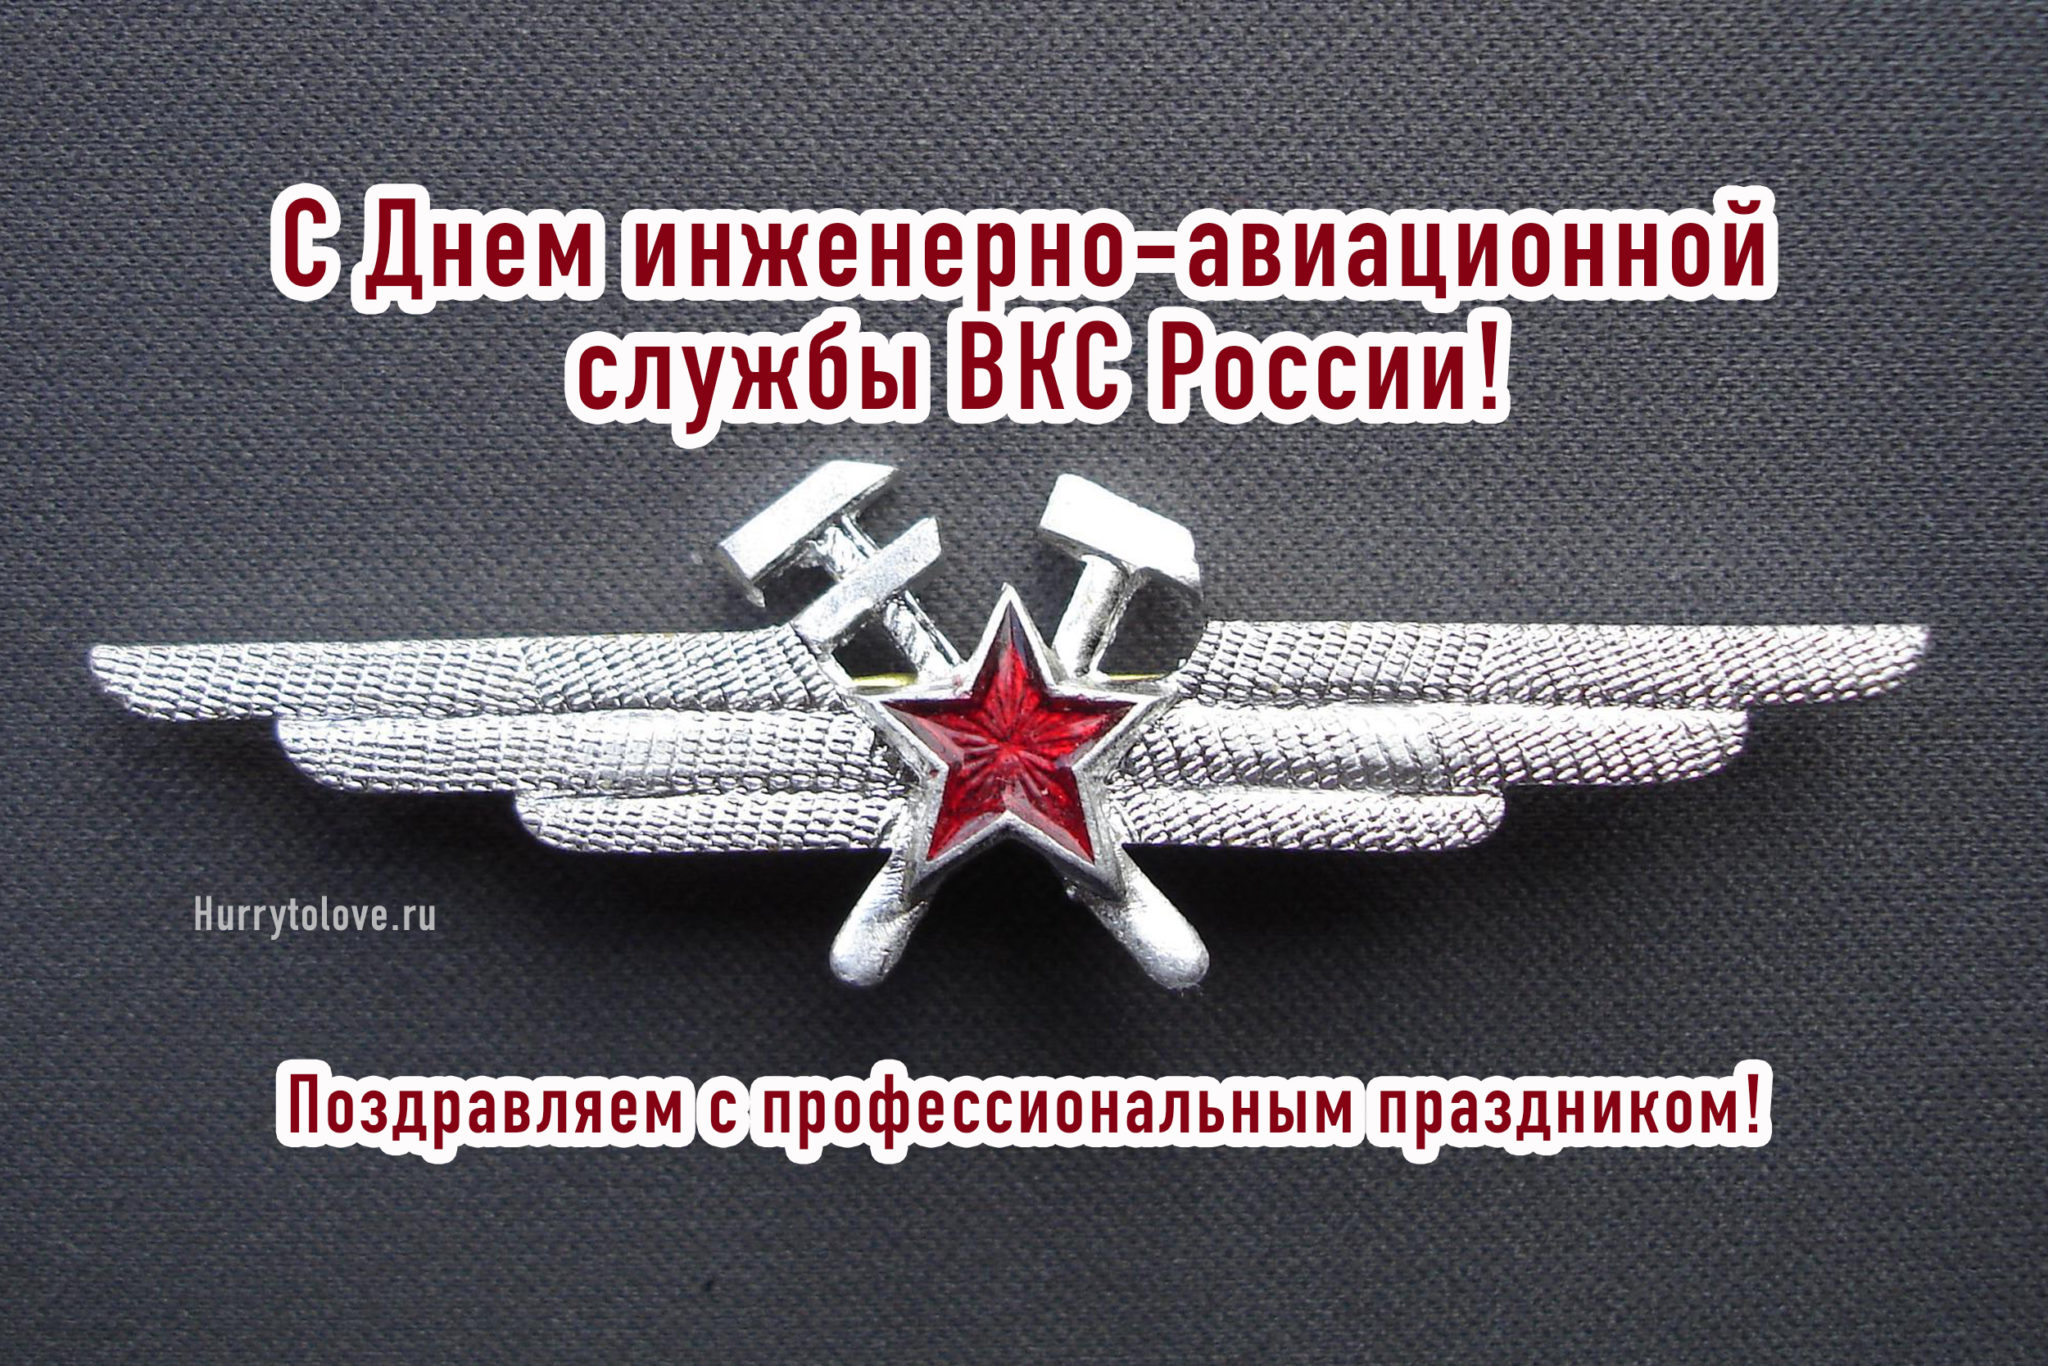 День инженерно-авиационной службы ВКС РФ